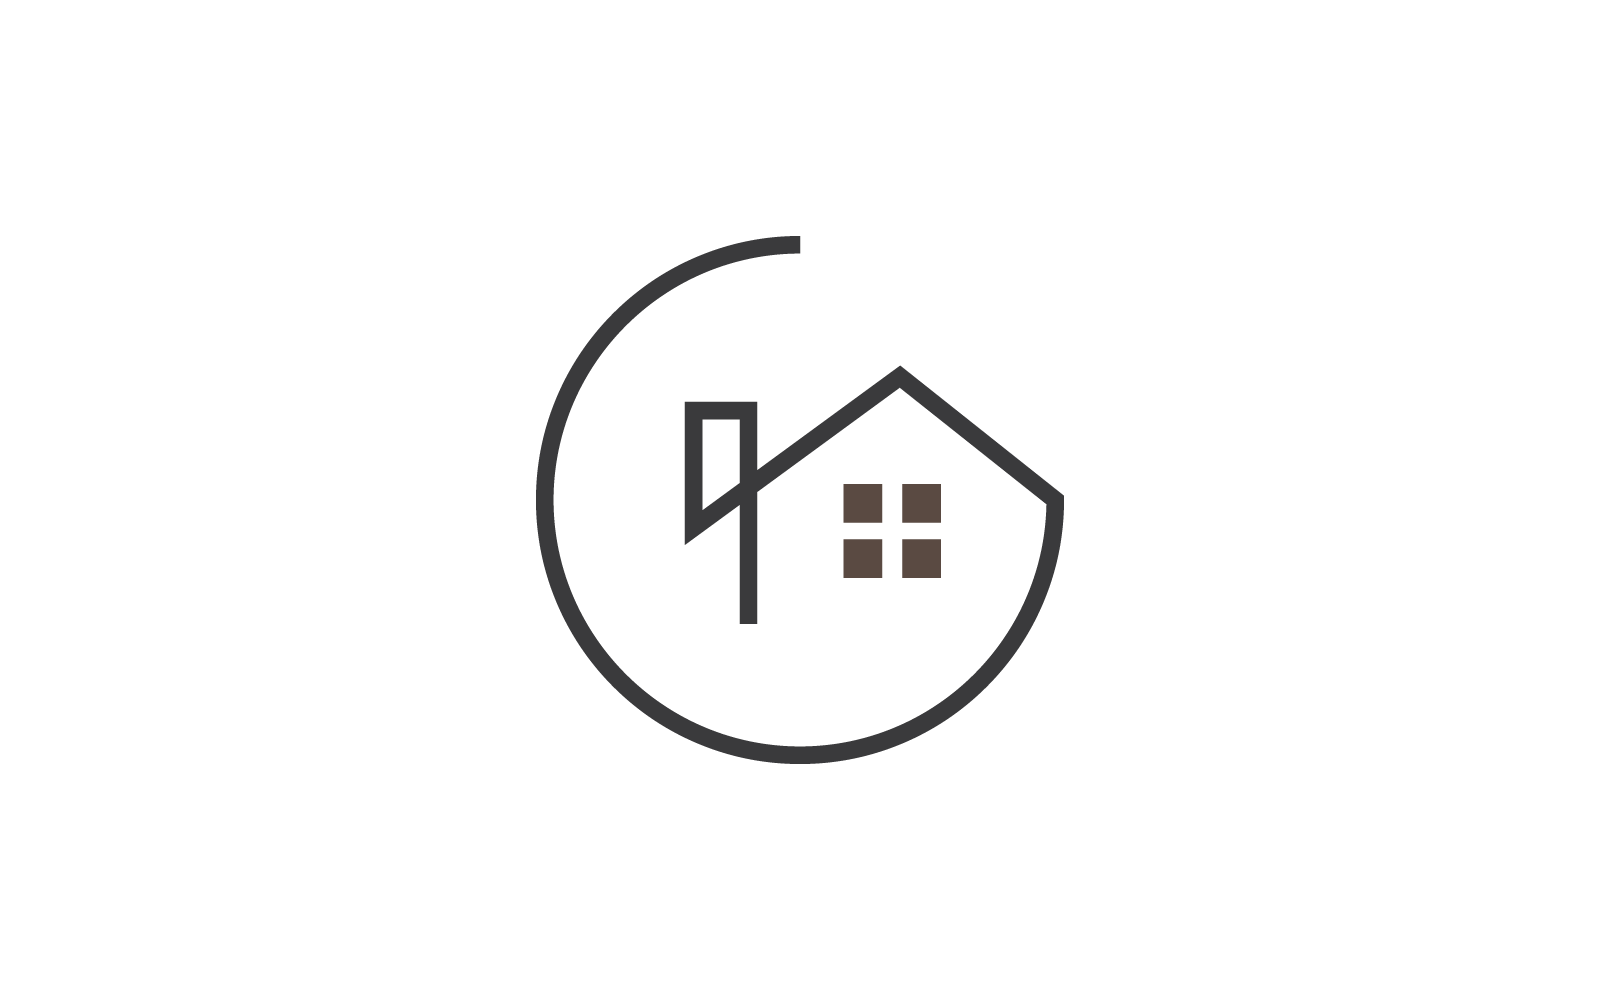 H Letter Property Logo design Template